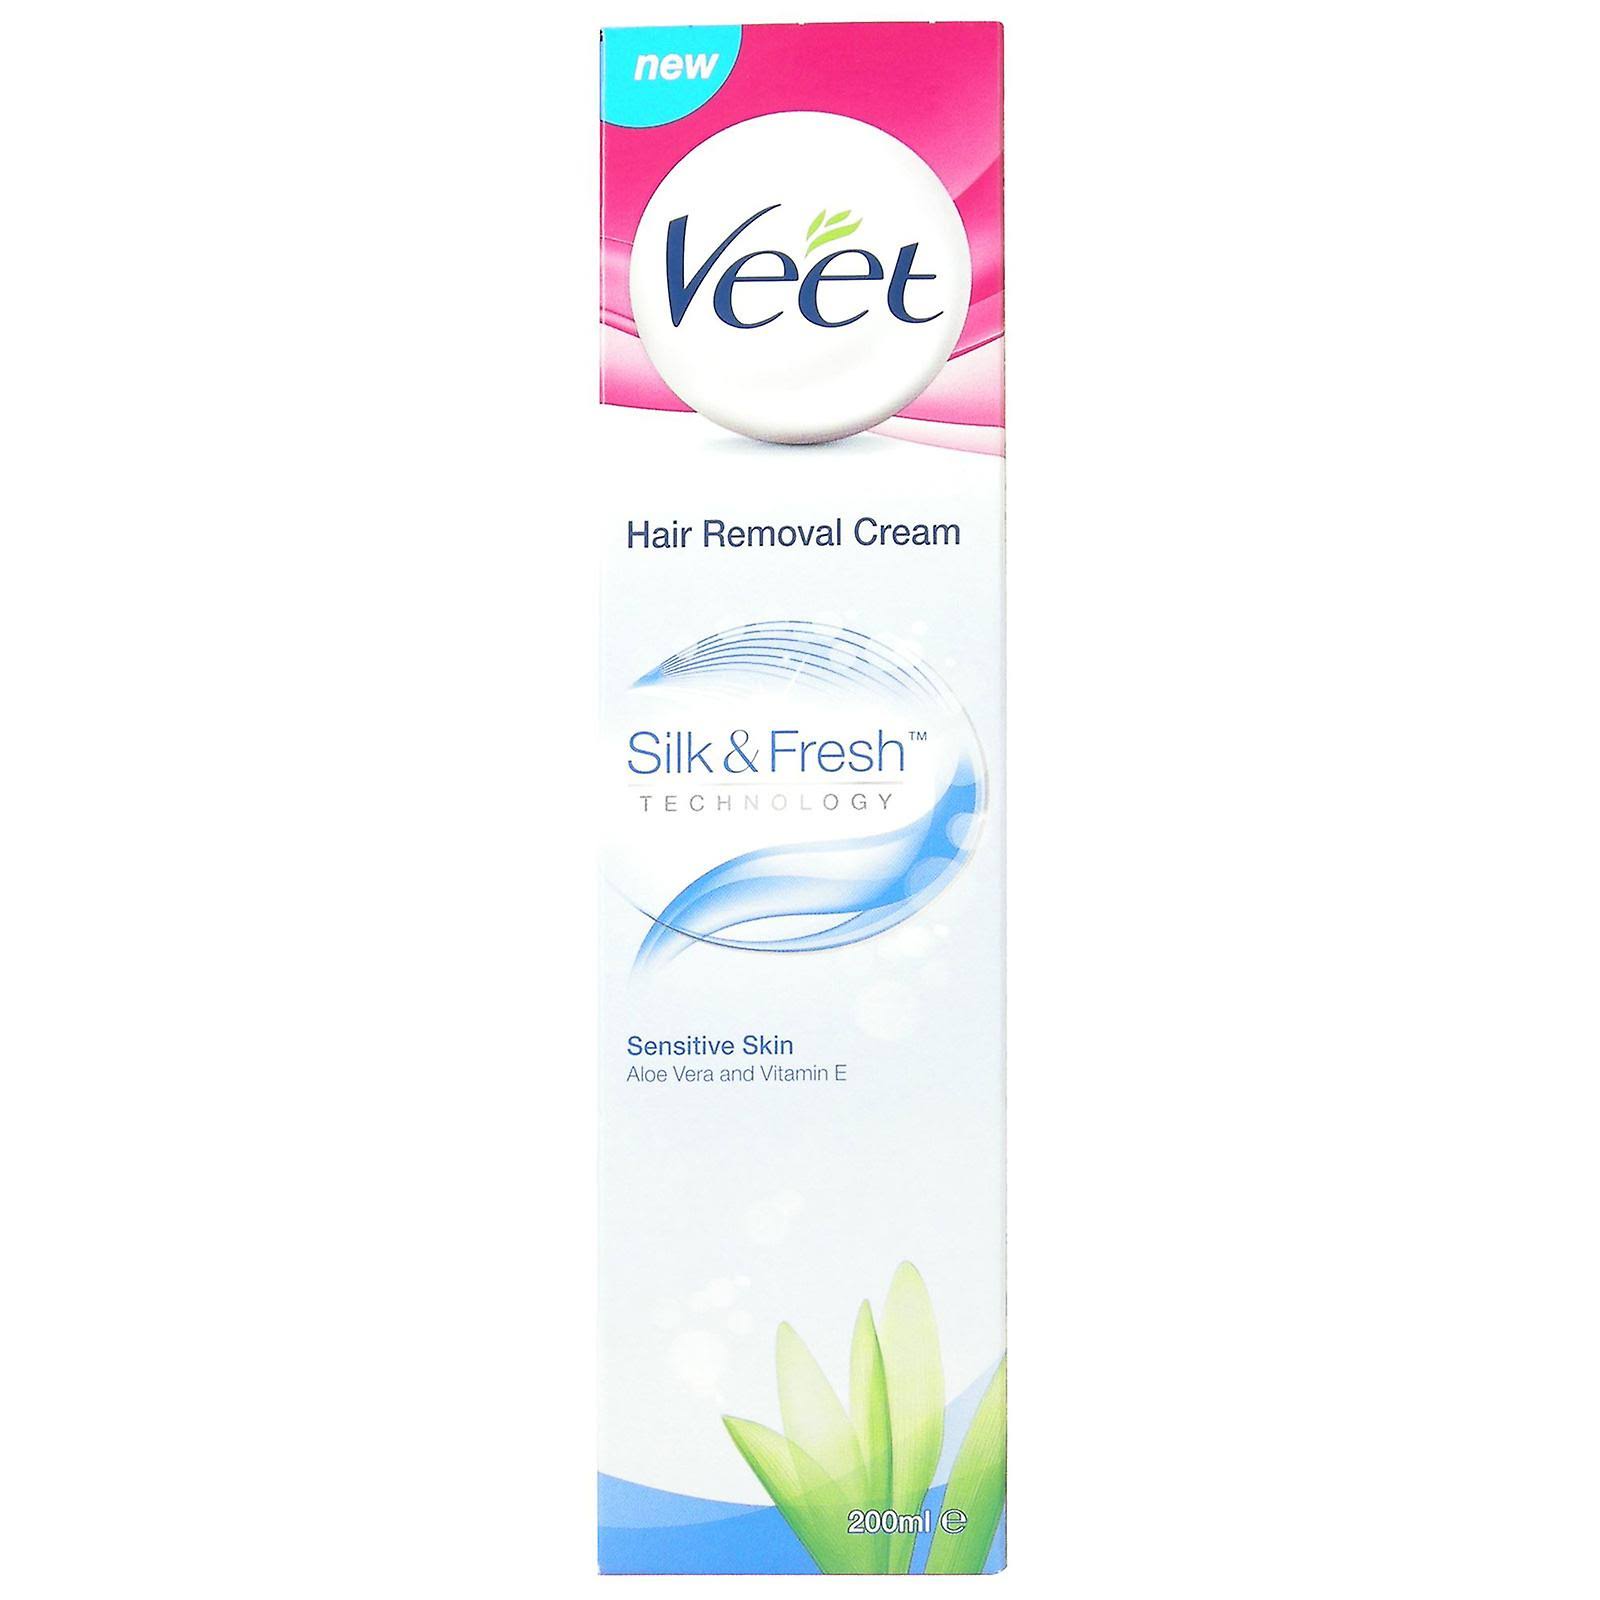 Veet Hair Removal Cream - for Sensitive Skin, 200ml